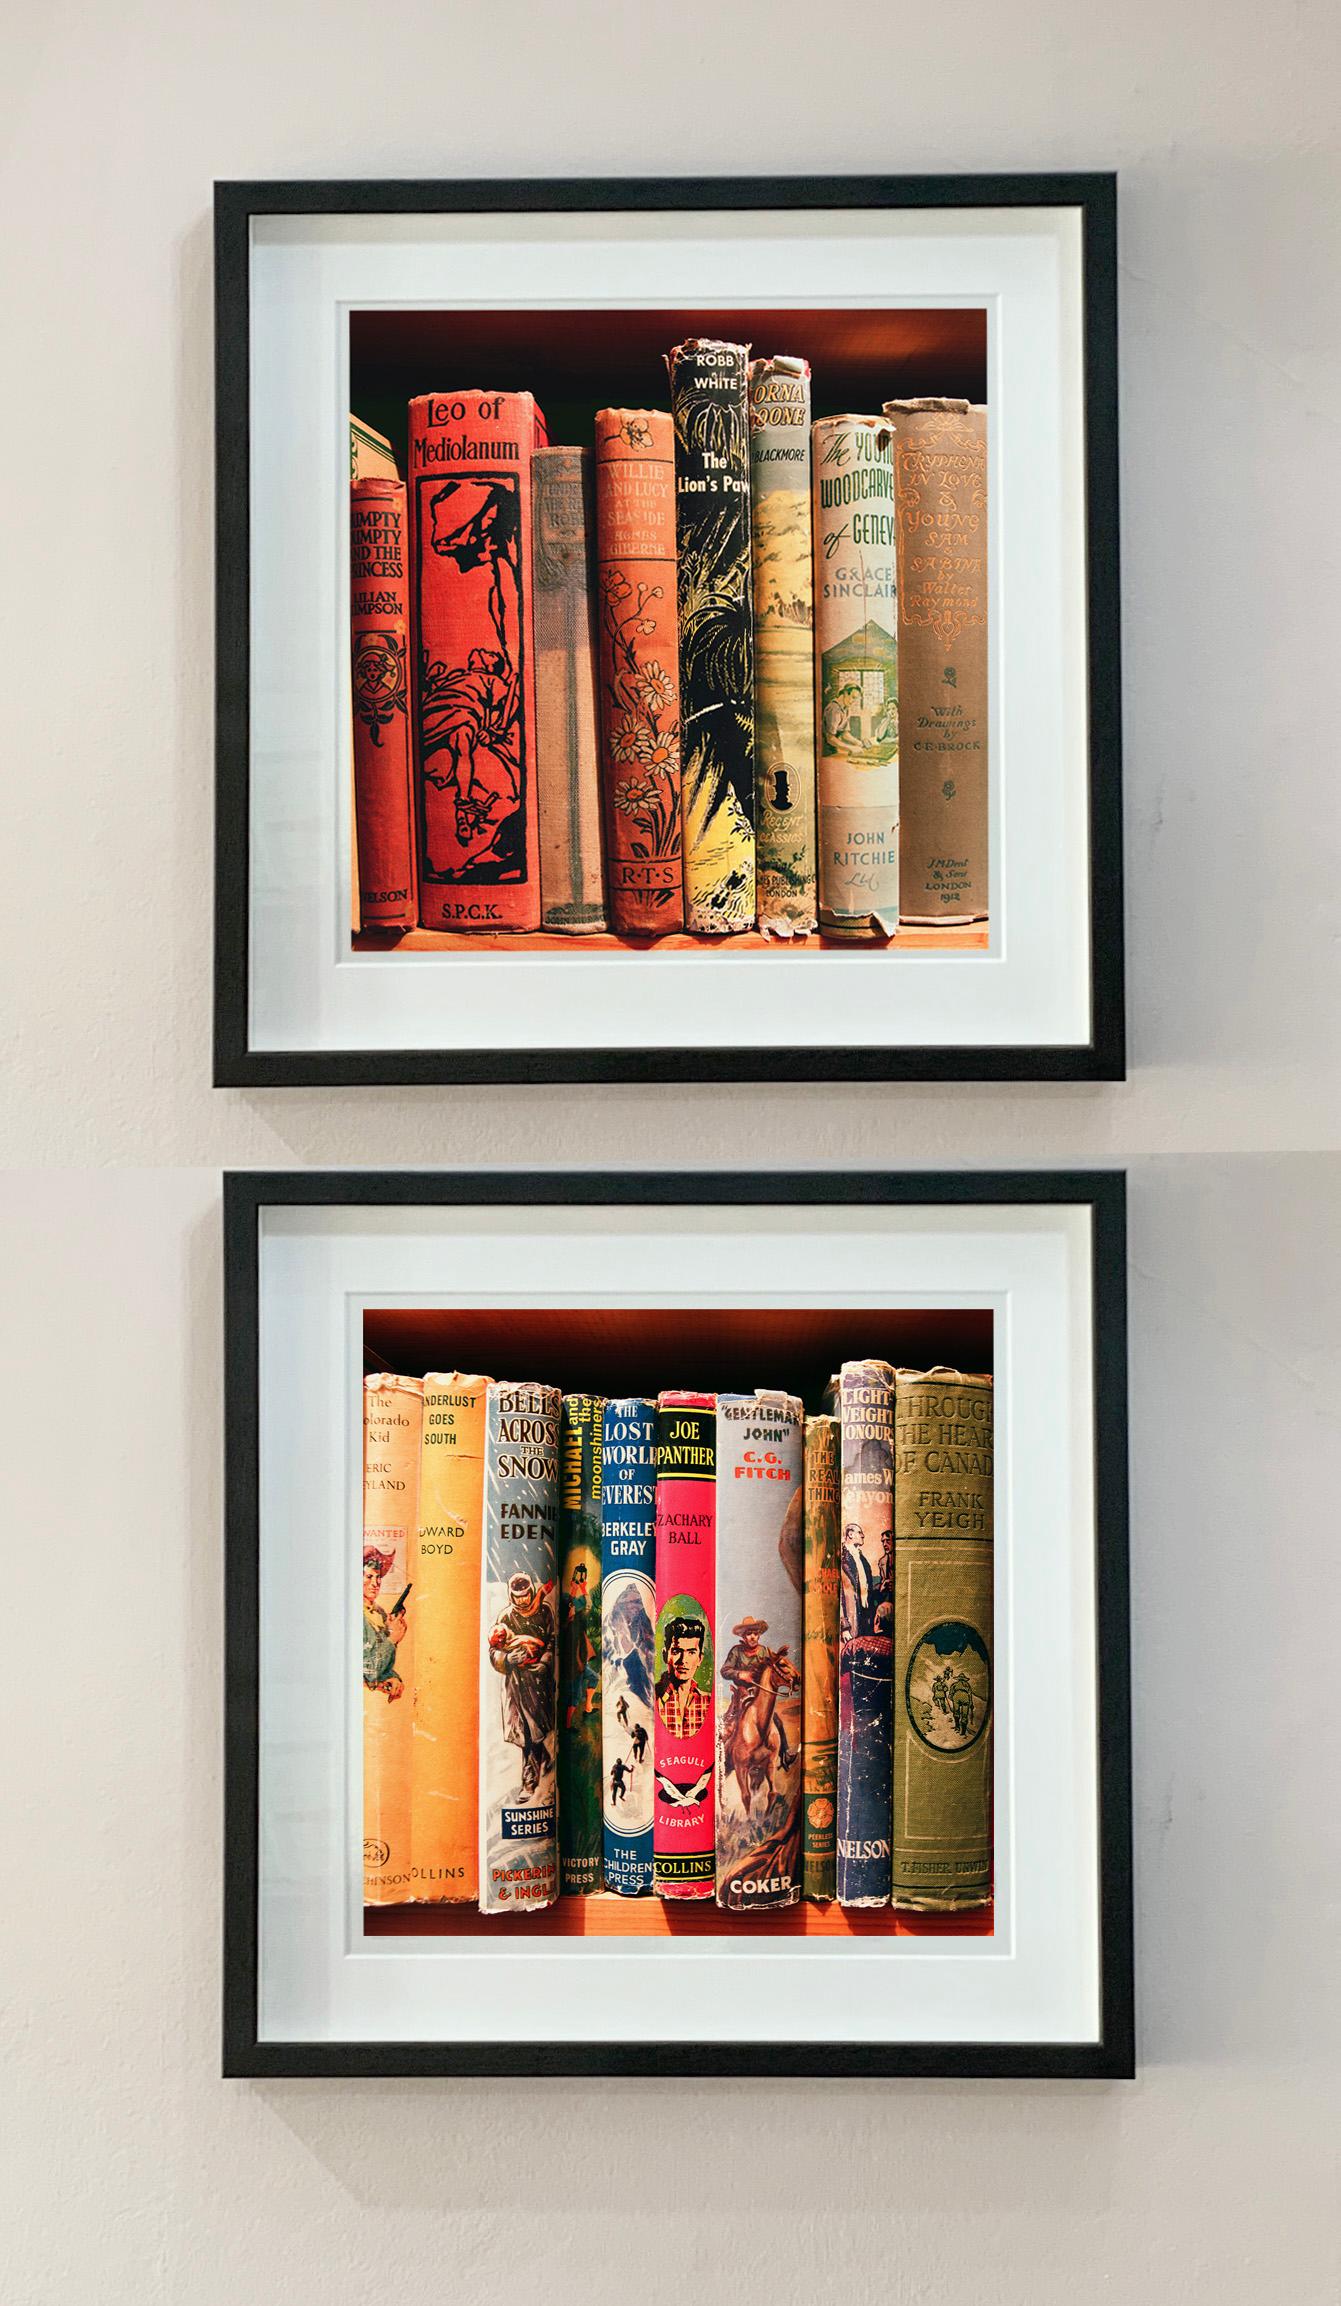 Humpty Dumpty and the Princess, présente une collection de dos de livres anciens sur une étagère, dans une photographie de Richard Heeps tirée de sa série In The Treasure Trove. Pris dans une librairie d'occasion dans le Norfolk, le motif linéaire